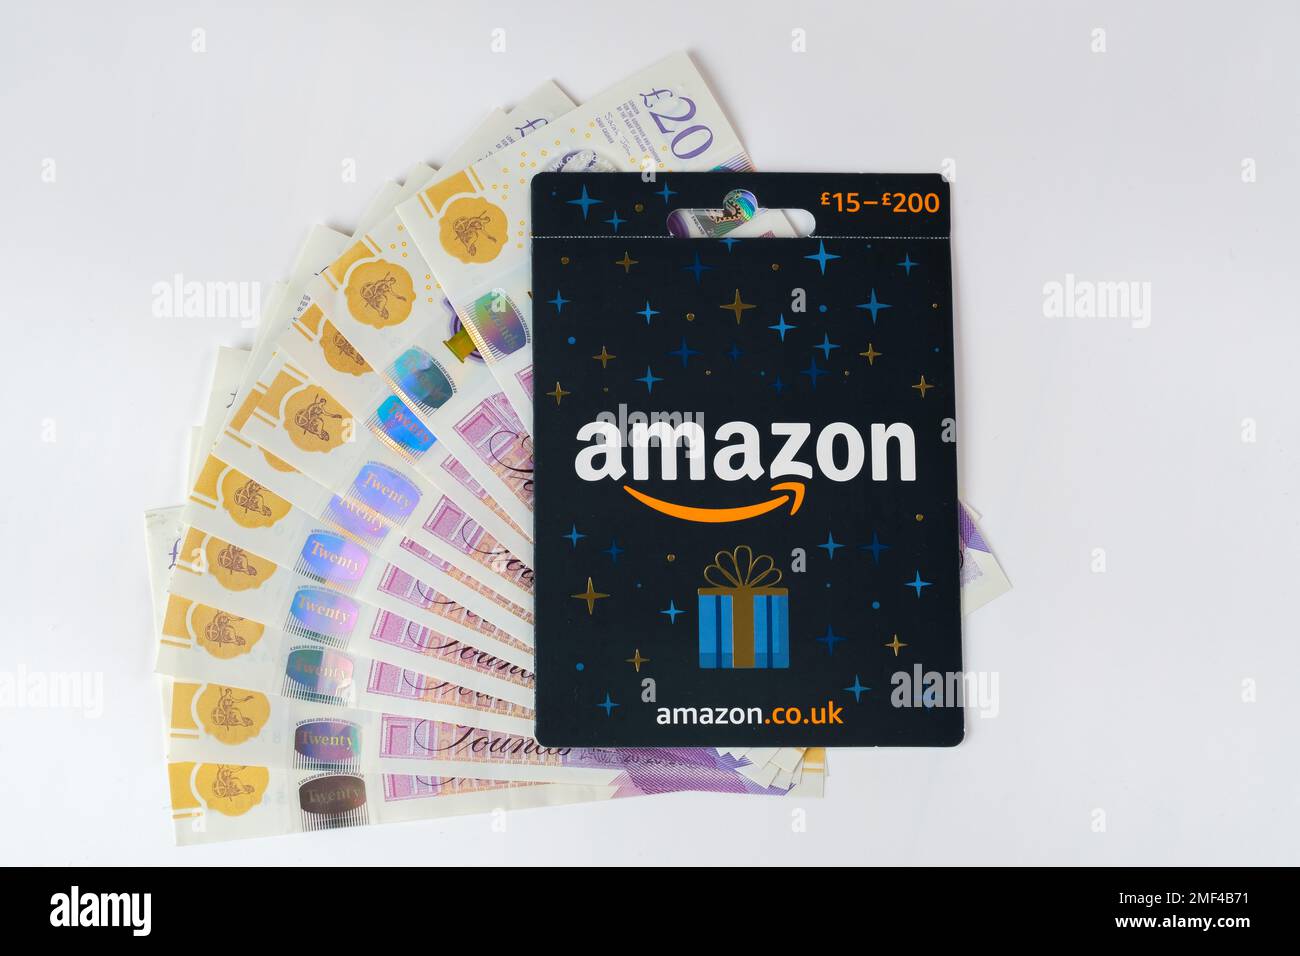 Immagine ravvicinata della carta regalo Amazon e denaro contante. Stafford, Regno Unito, 24 gennaio 2023 Foto Stock